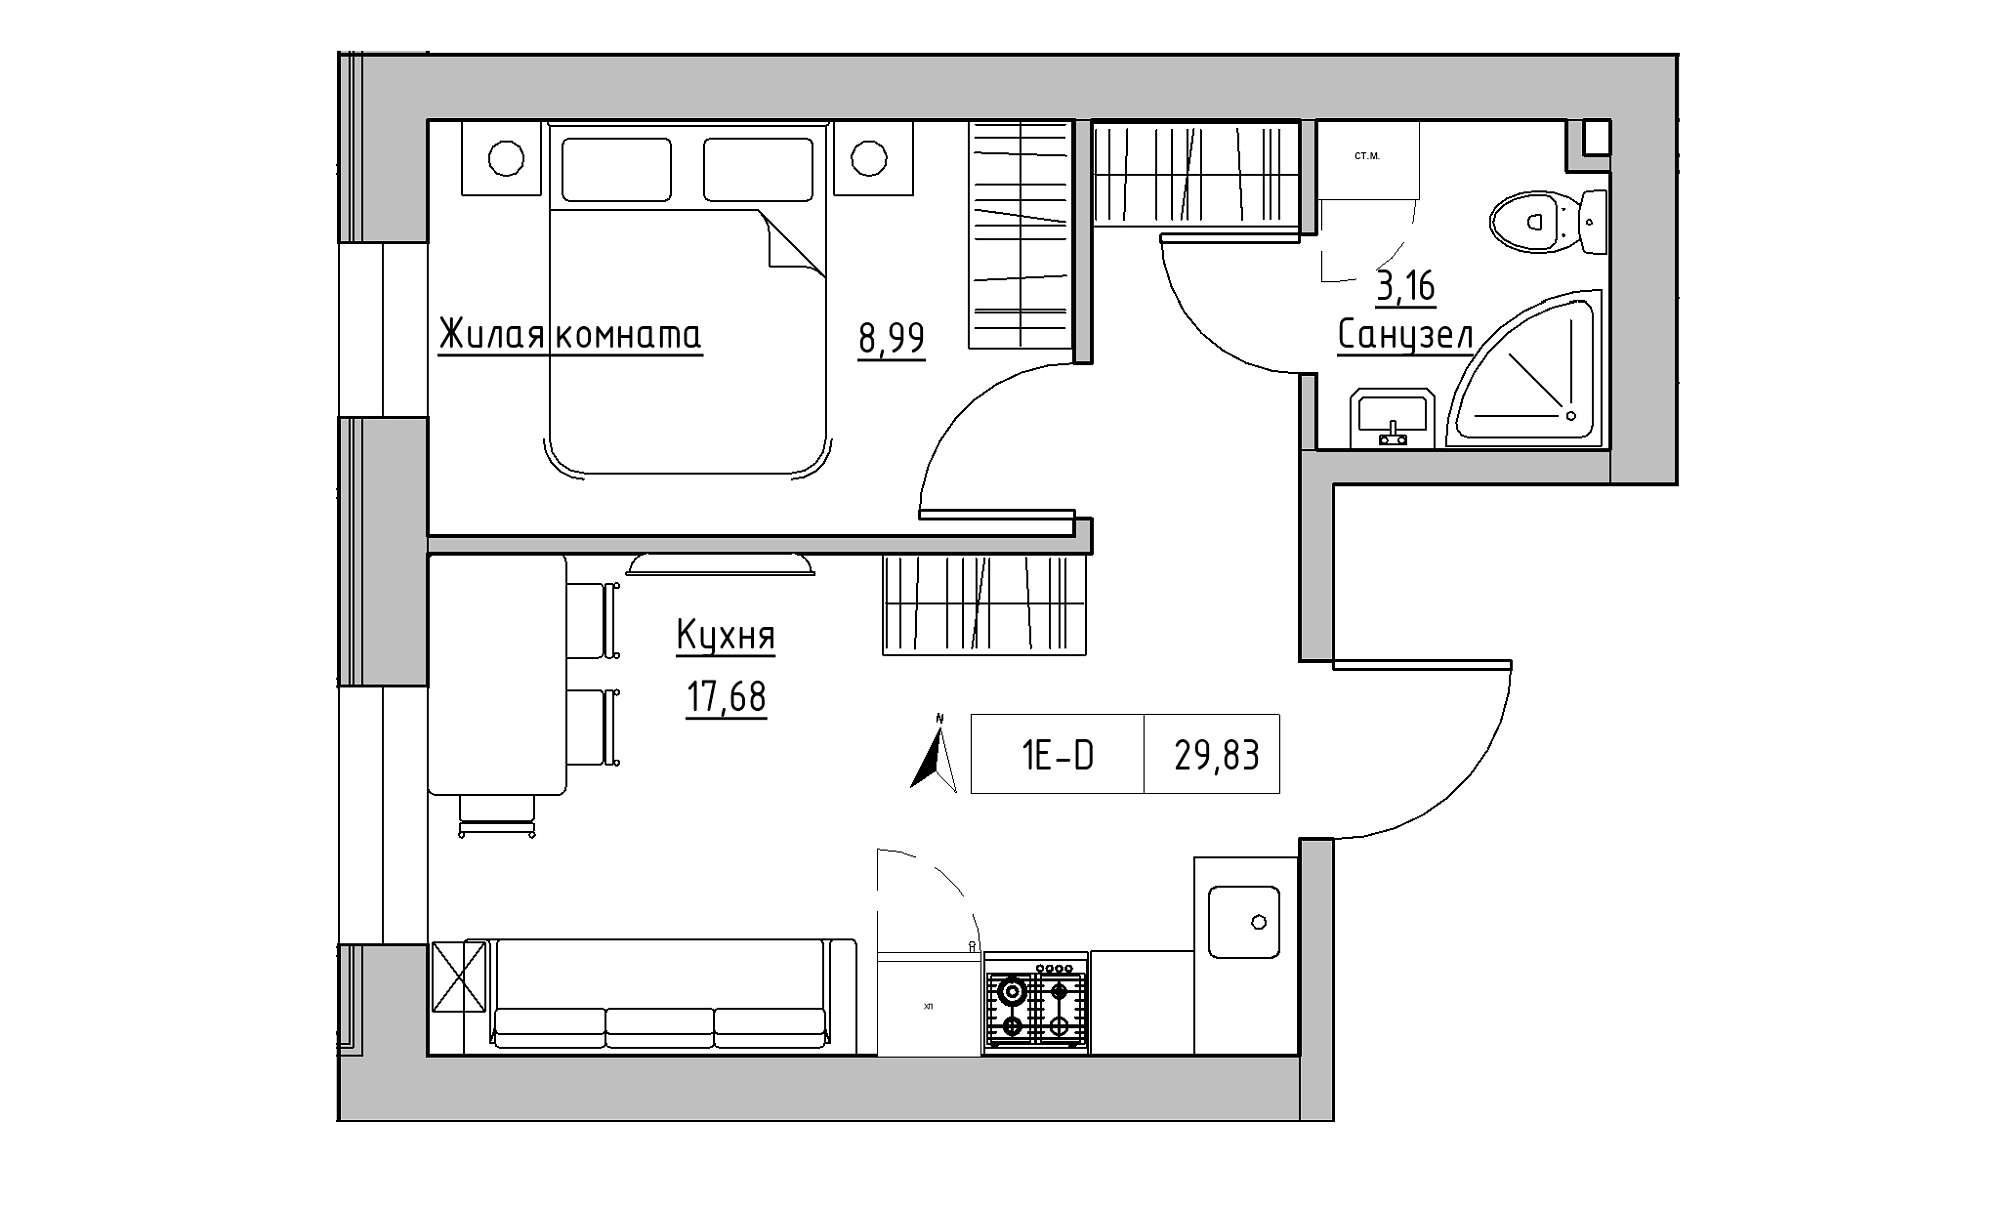 Планировка 1-к квартира площей 29.83м2, KS-023-01/0003.